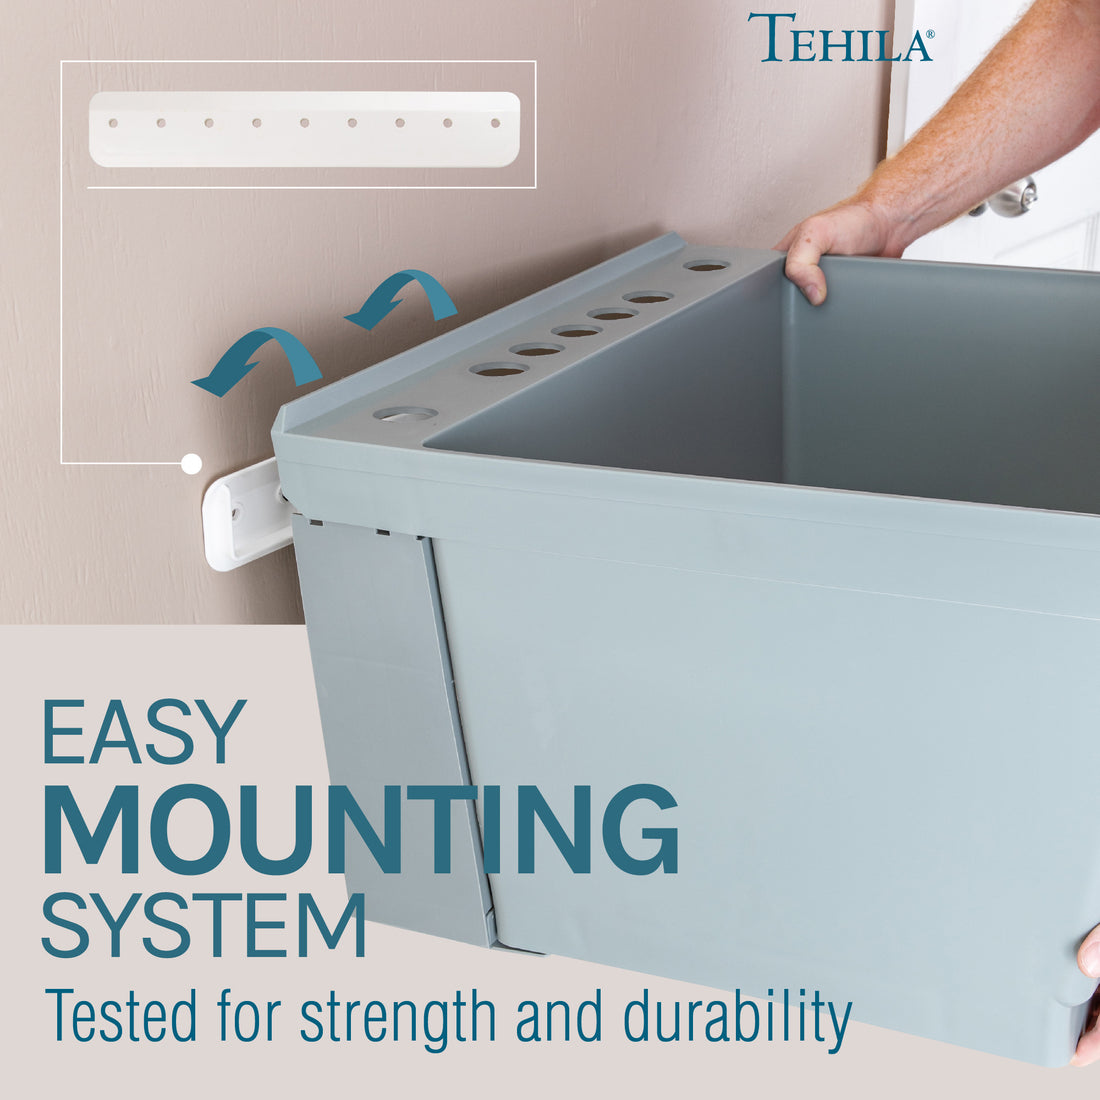 Tehila Standard Wall-Mounted Grey Utility Sink, Water Supply Lines Included - Utility sinks vanites Tehila